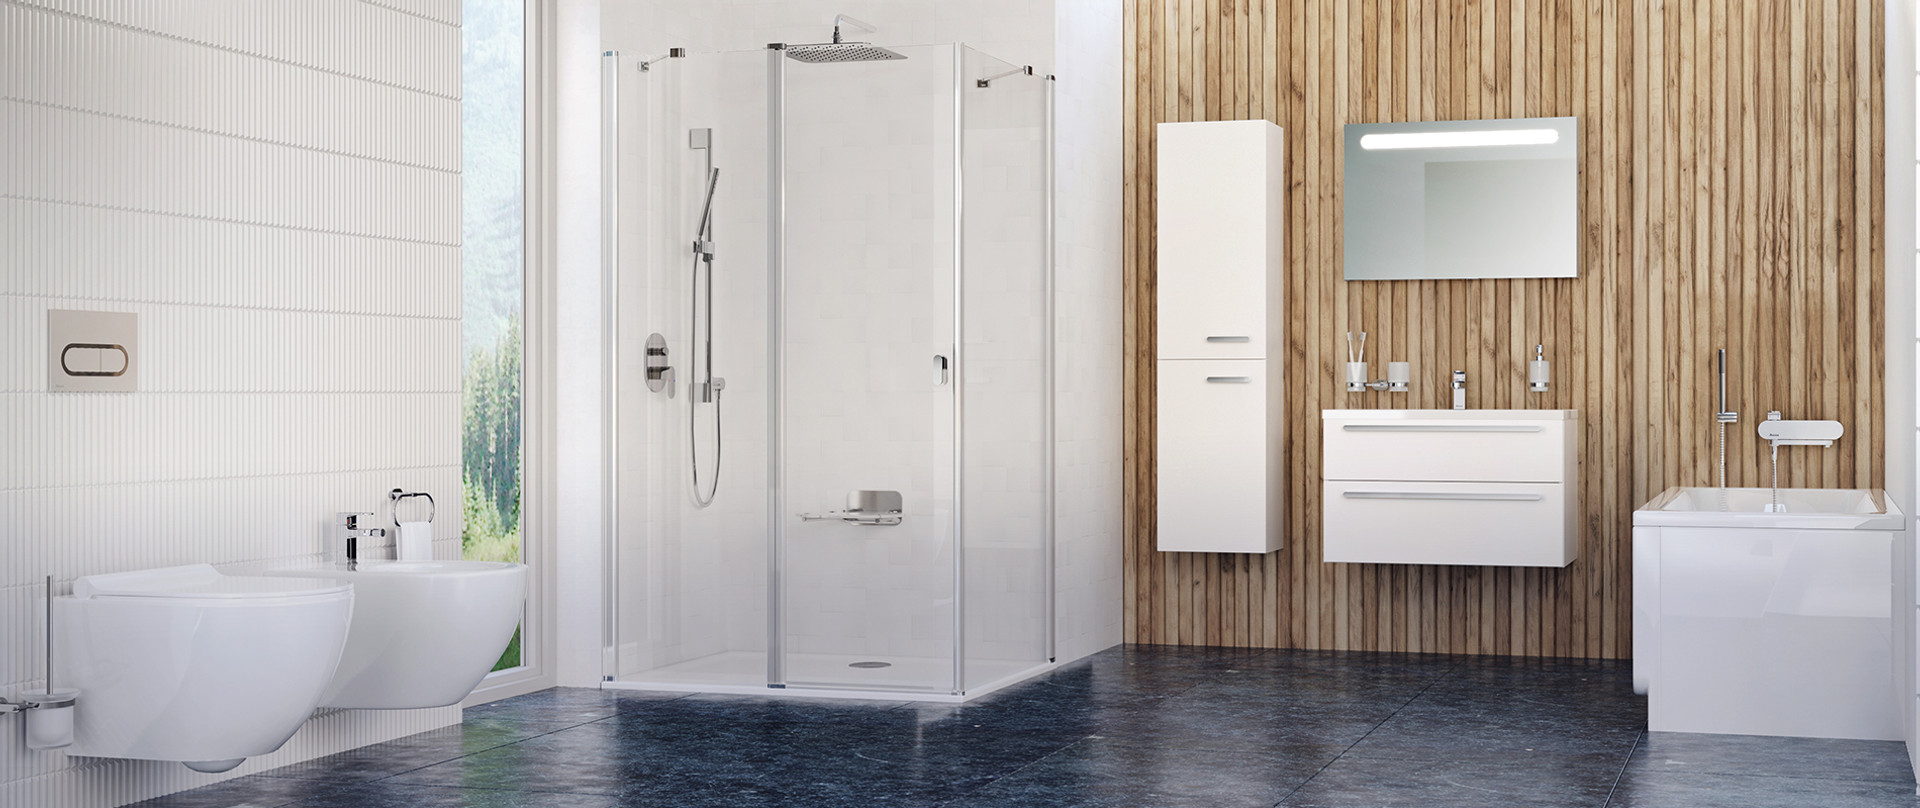 Коли місця вистачить на все: 8 практичних рішень для сучасних ванних кімнат